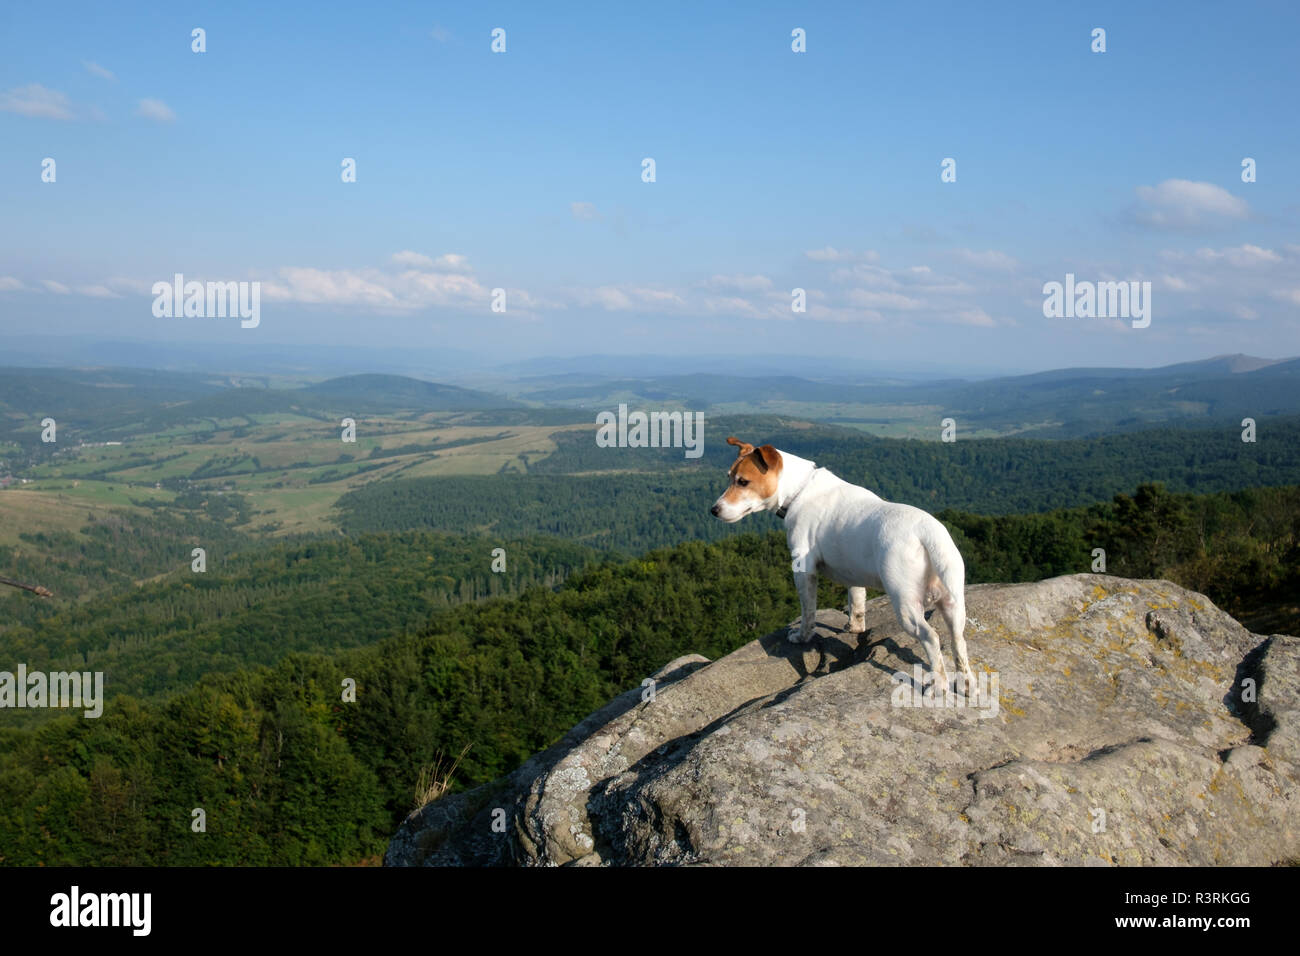 Alone bianco dog sitter su roccia contro lo sfondo di un incredibile paesaggio di montagna Foto Stock